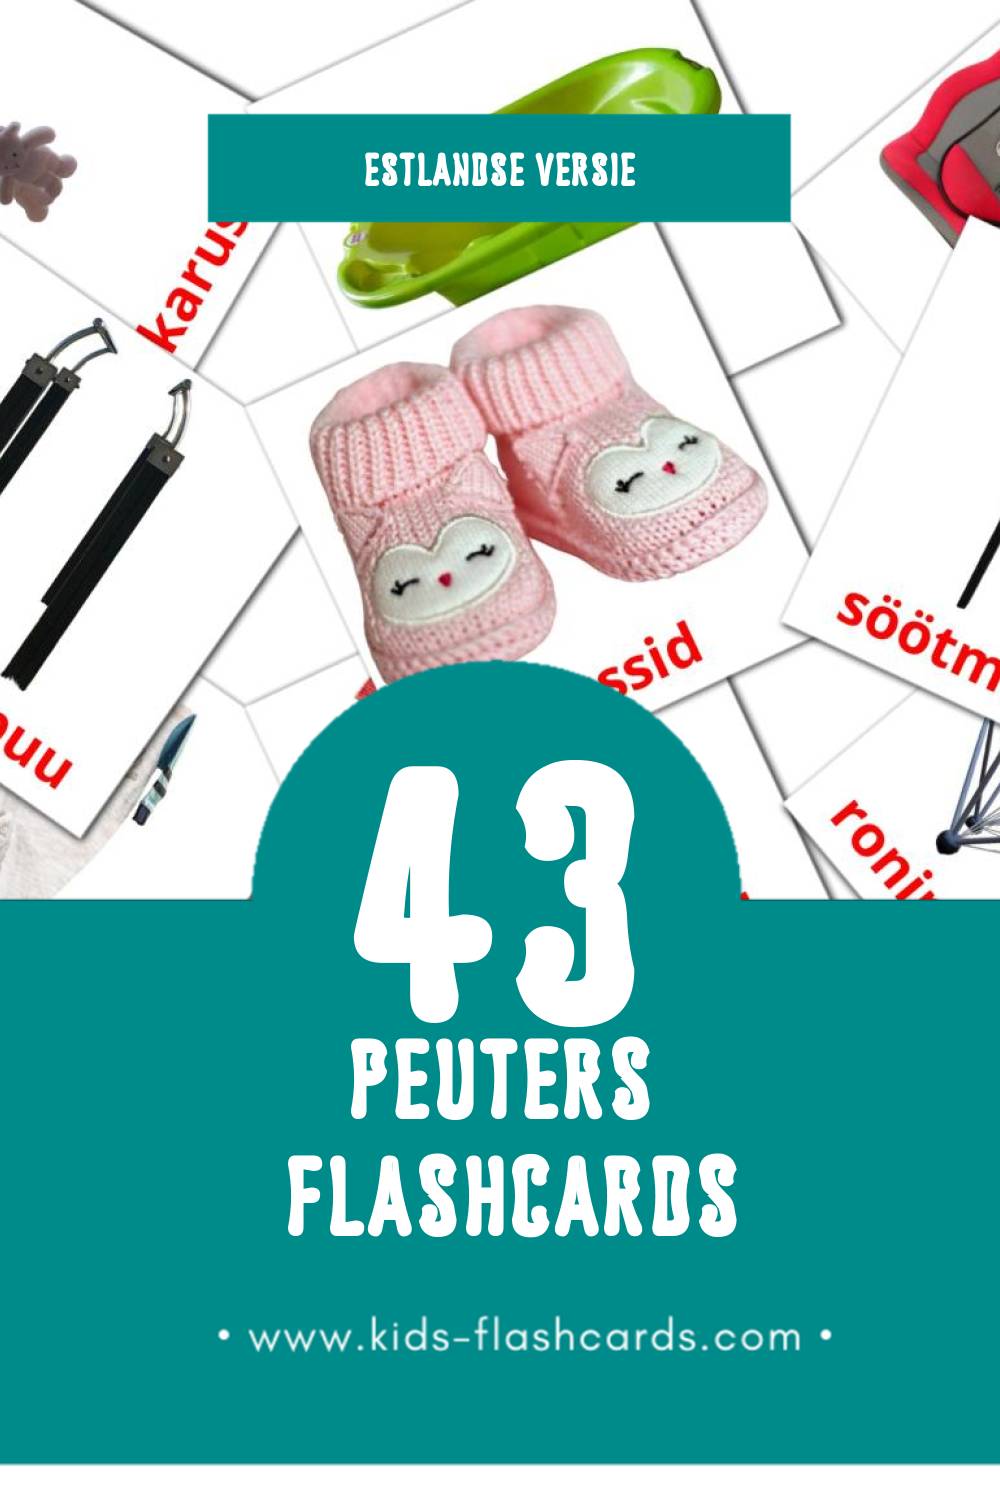 Visuele Beebi Flashcards voor Kleuters (43 kaarten in het Estlands)